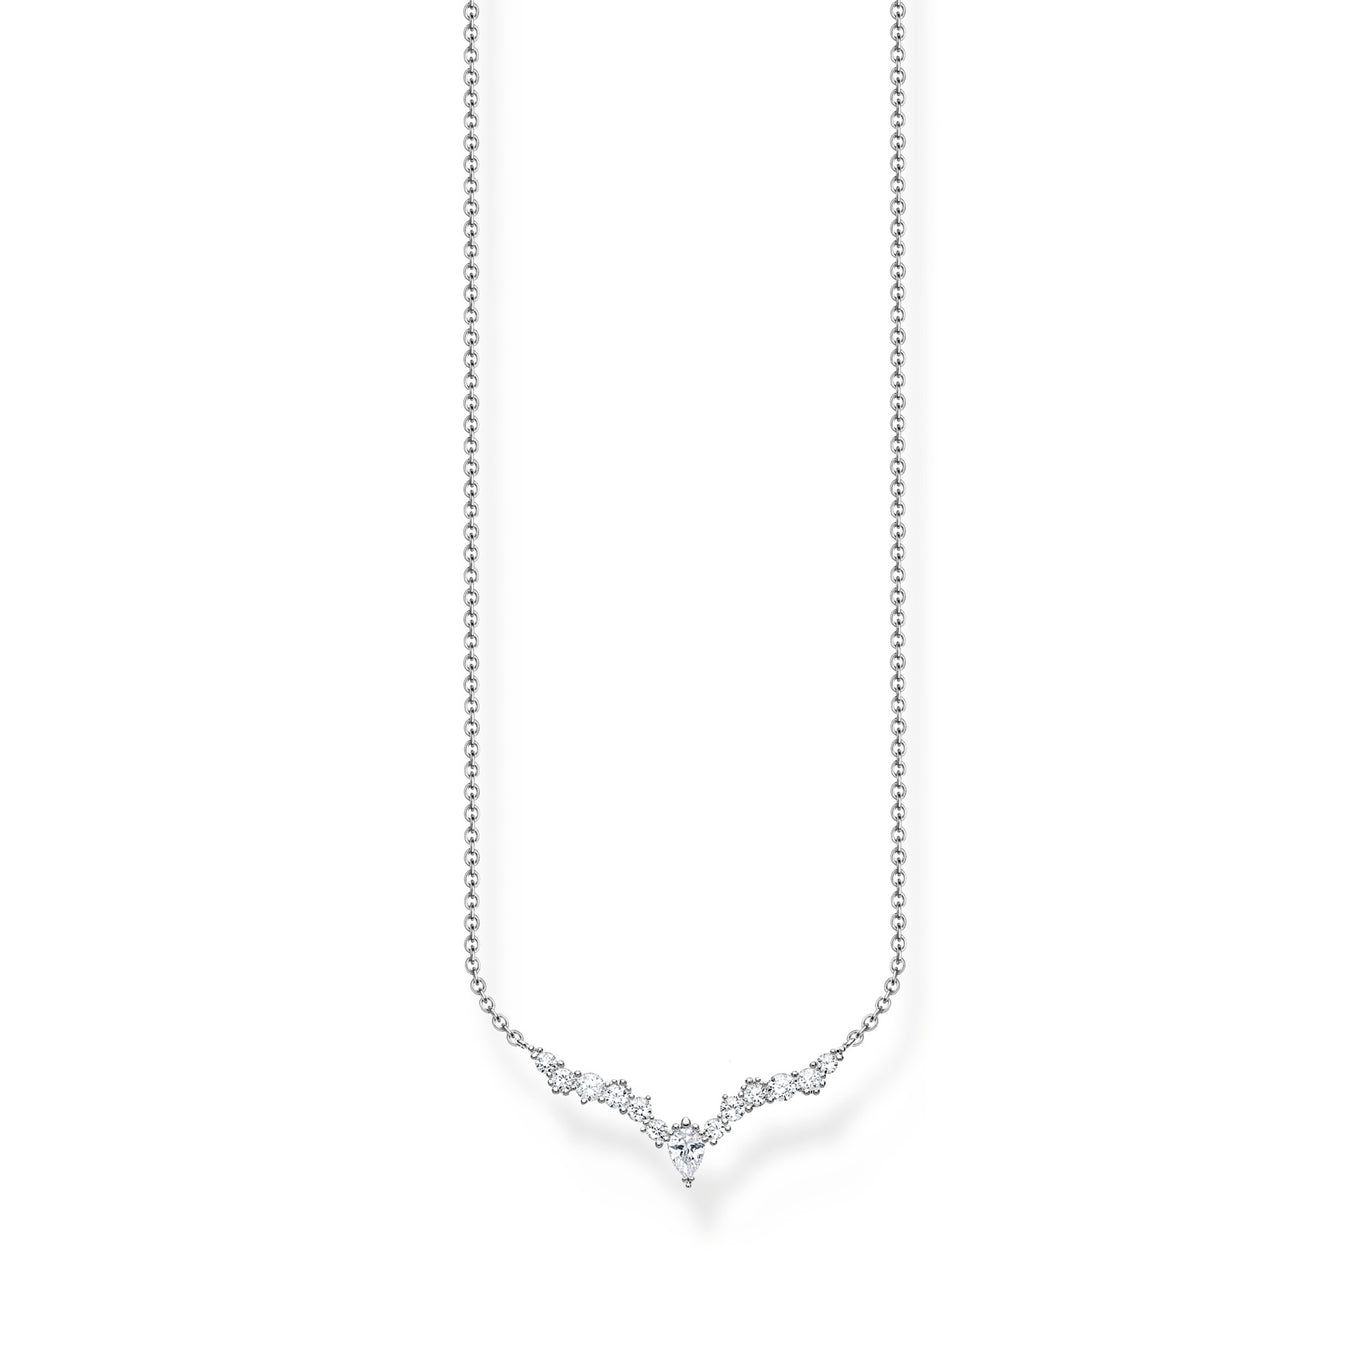 Thomas Sabo Silver Ice Crystals necklace